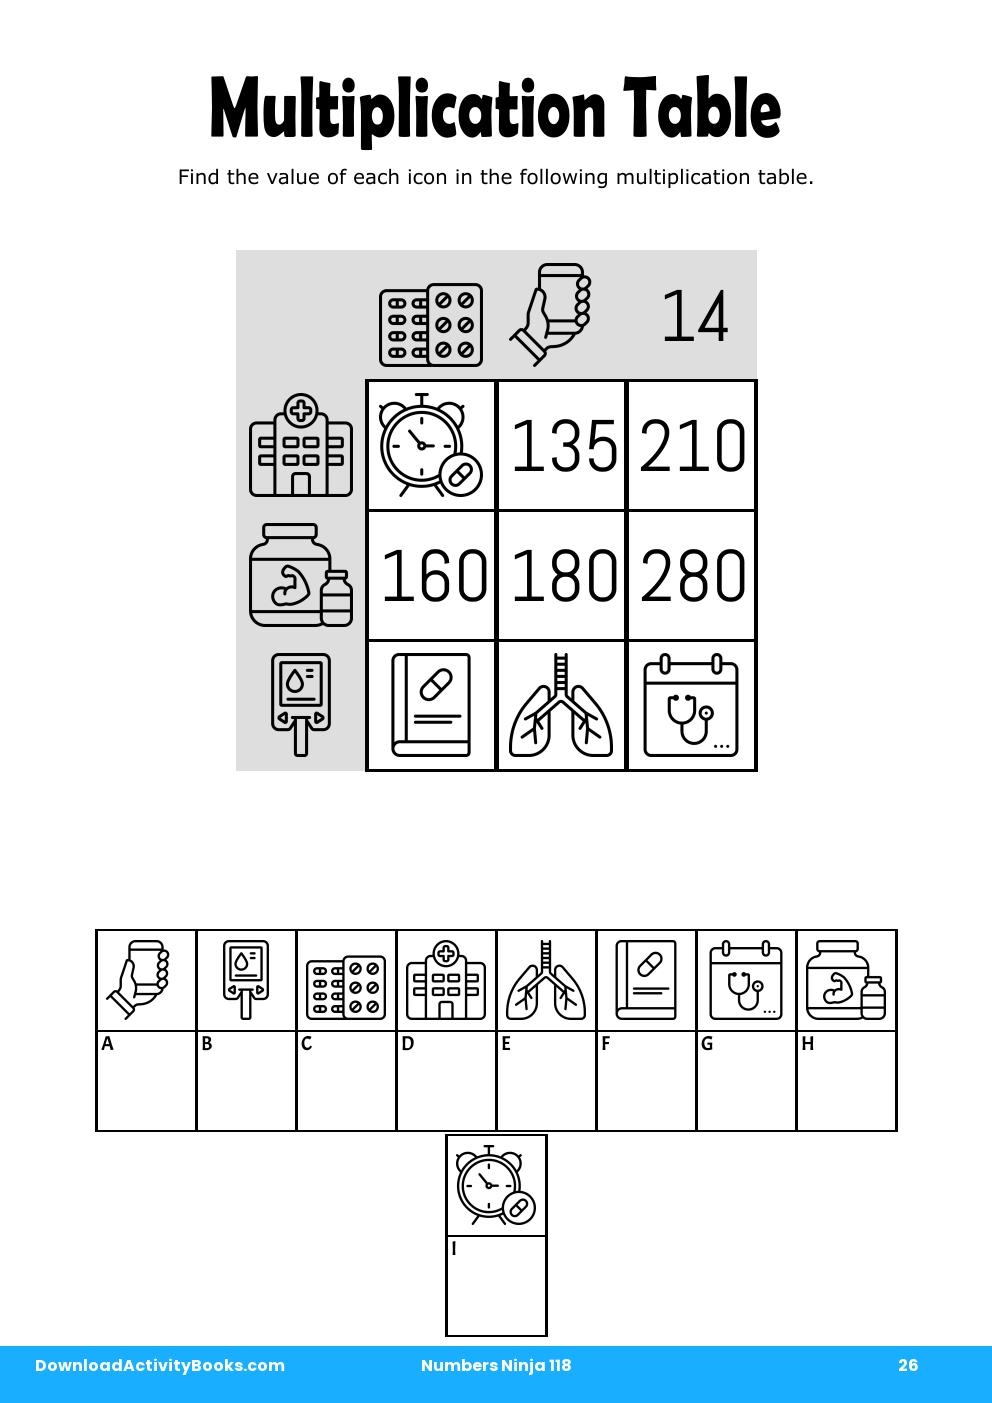 Multiplication Table in Numbers Ninja 118